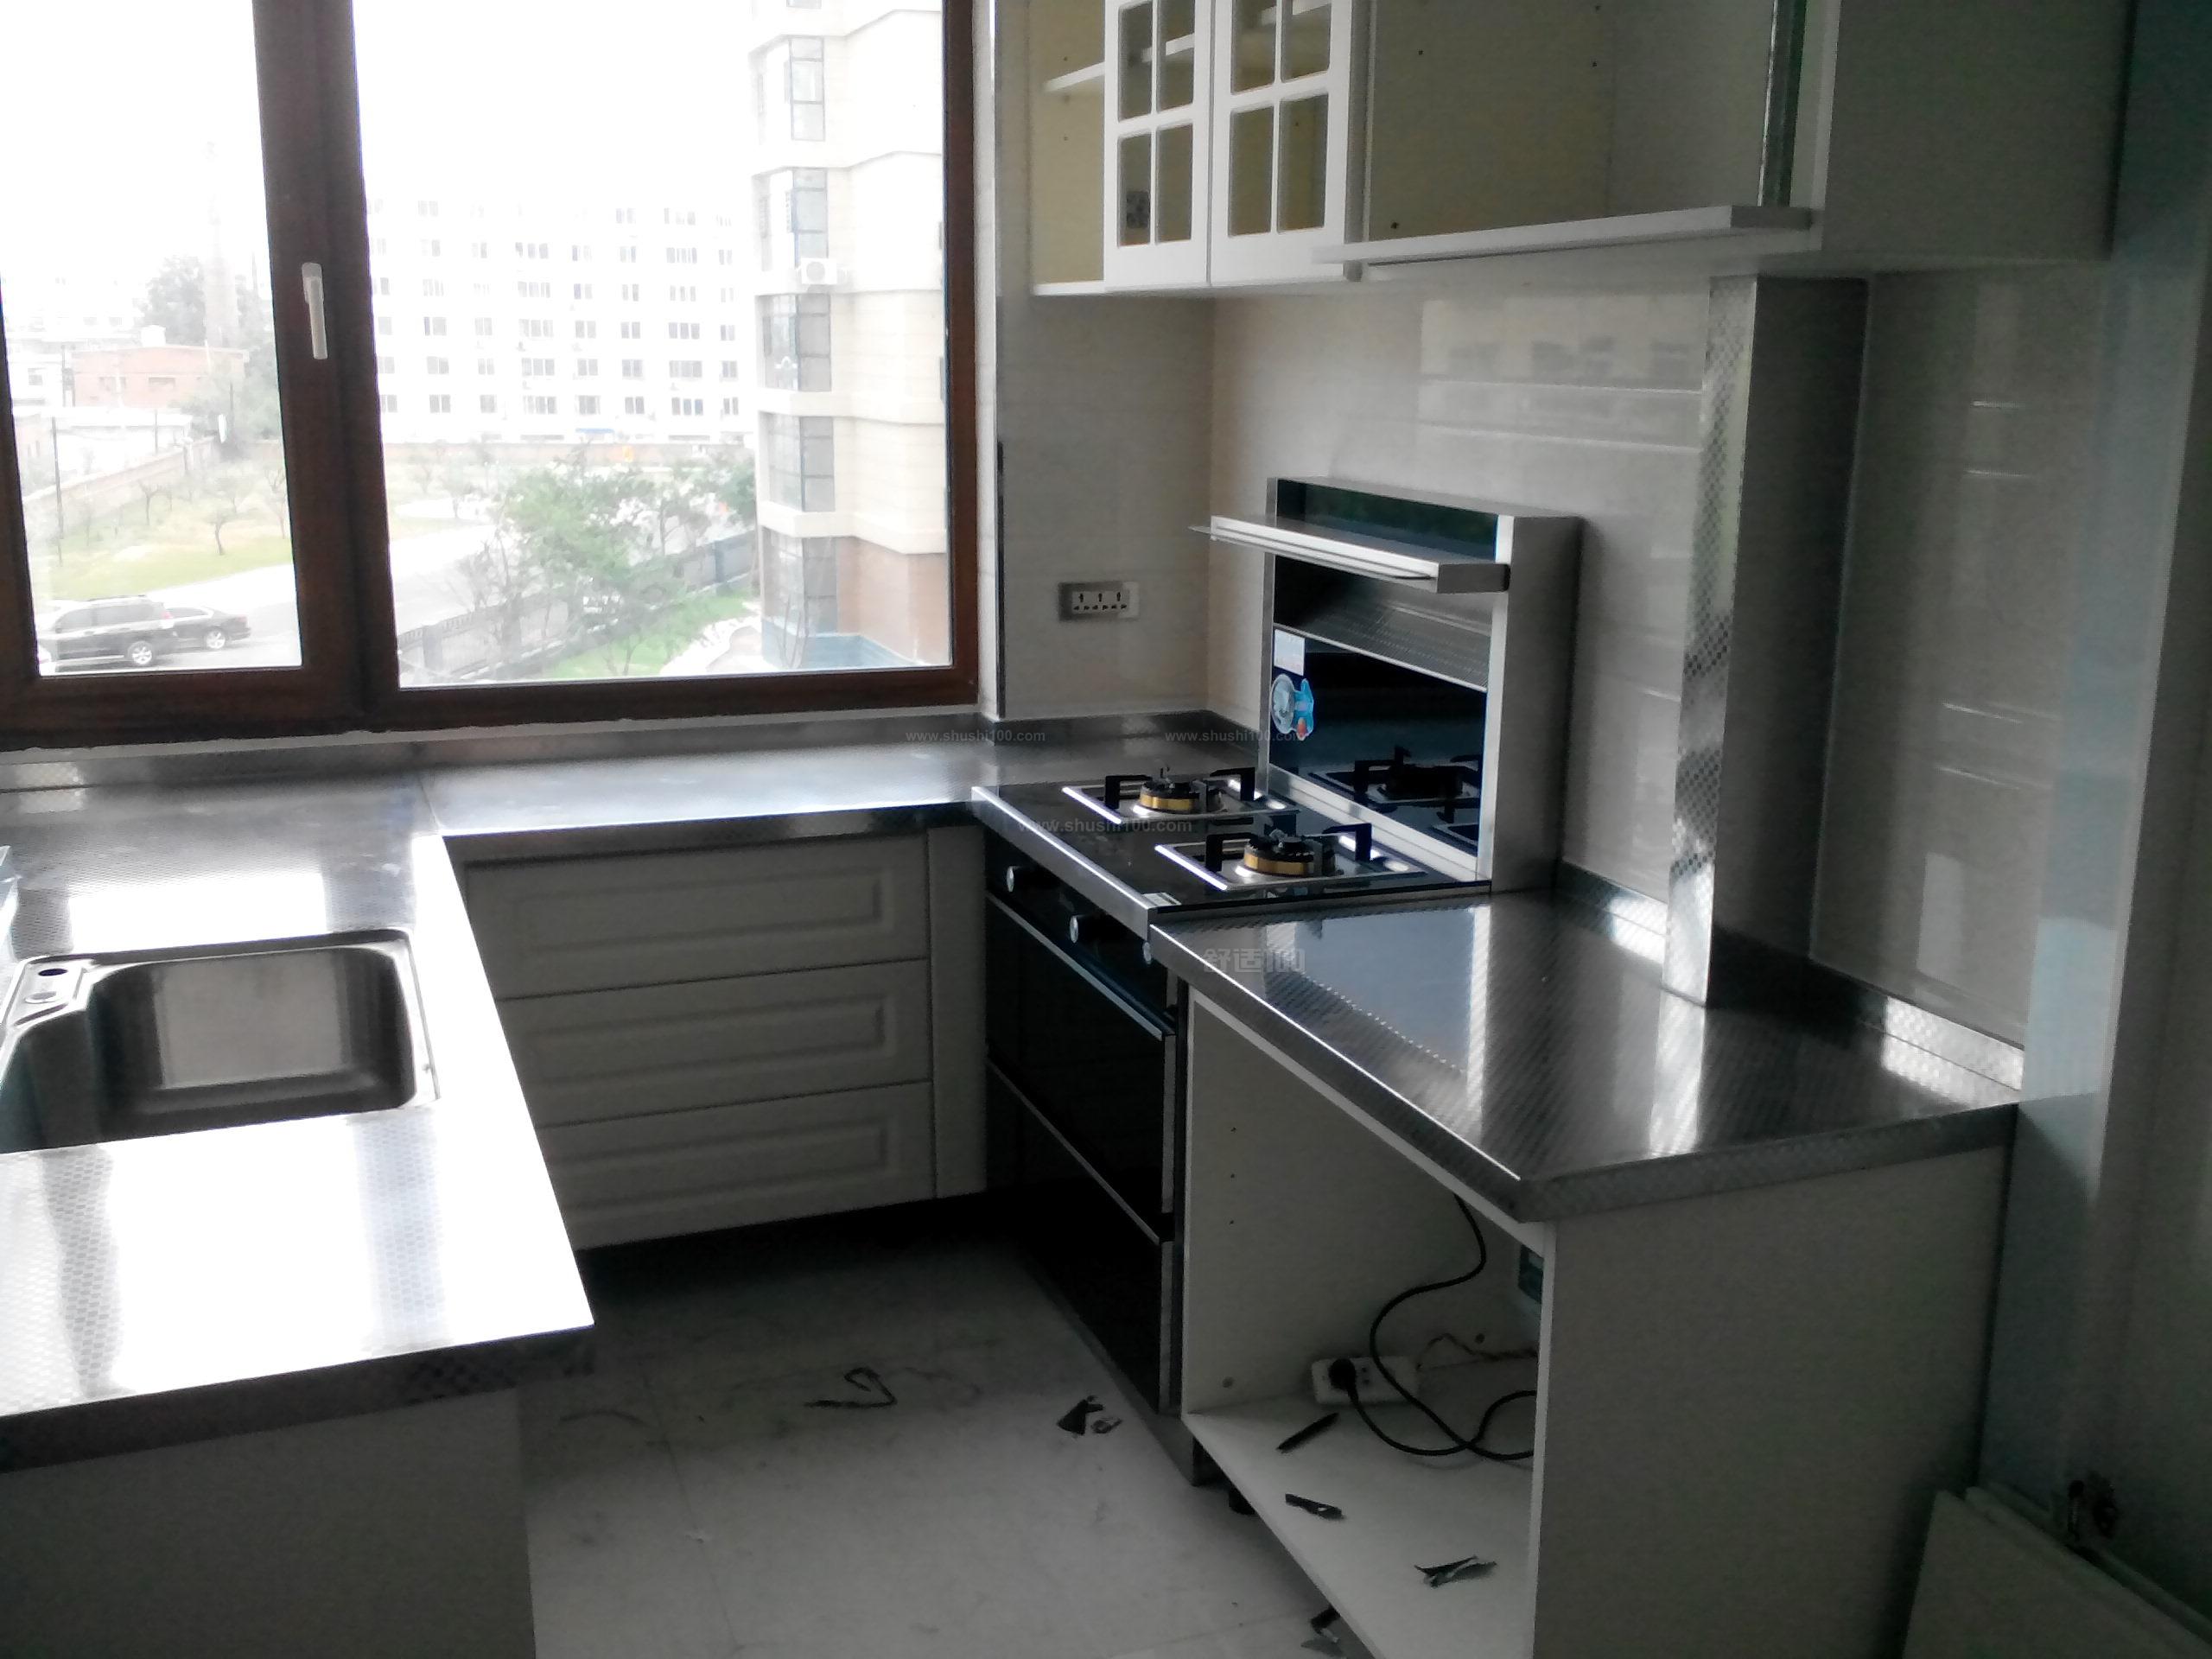 测评厨房不锈钢台面怎么样,专家详述厨房不锈钢台面好不好